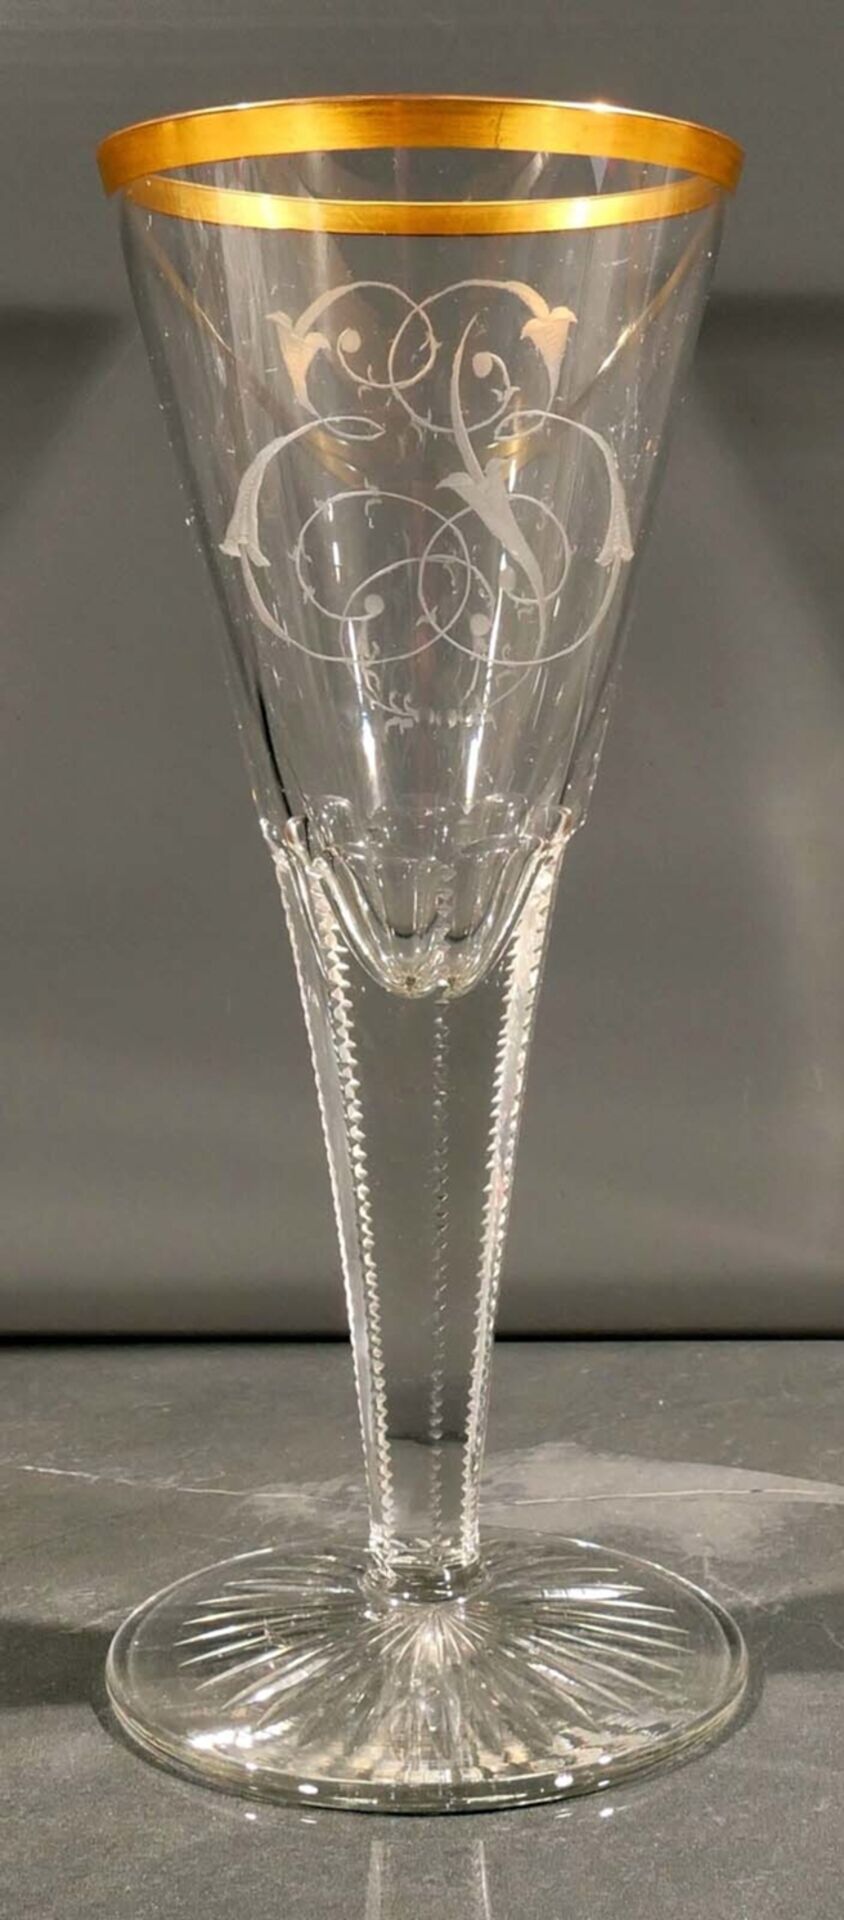 Prachtvolles Pokalglas in "Lauensteiner" - Manier, ligiertes Besitzermonogramm, Goldrand, Höhe 22 c - Bild 3 aus 6